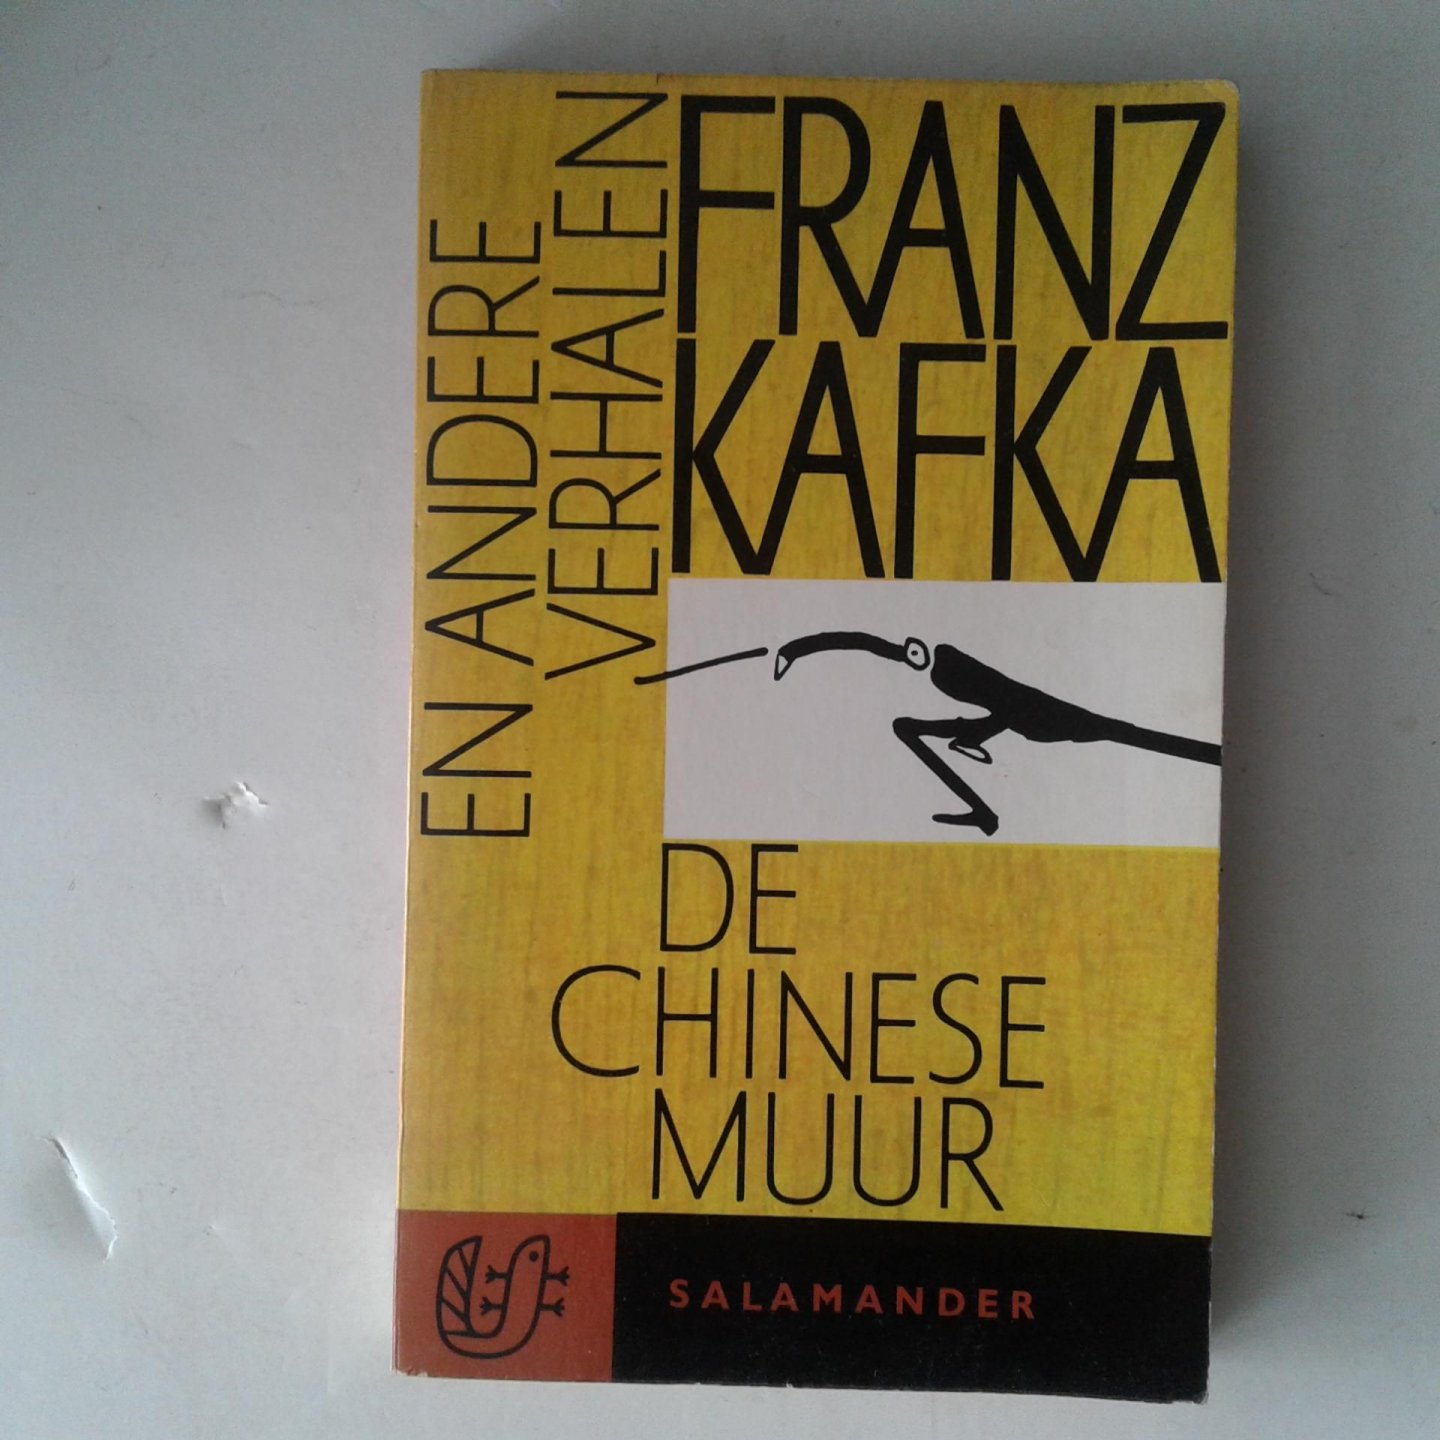 Kafka, Franz - De Chinese muur en andere verhalen